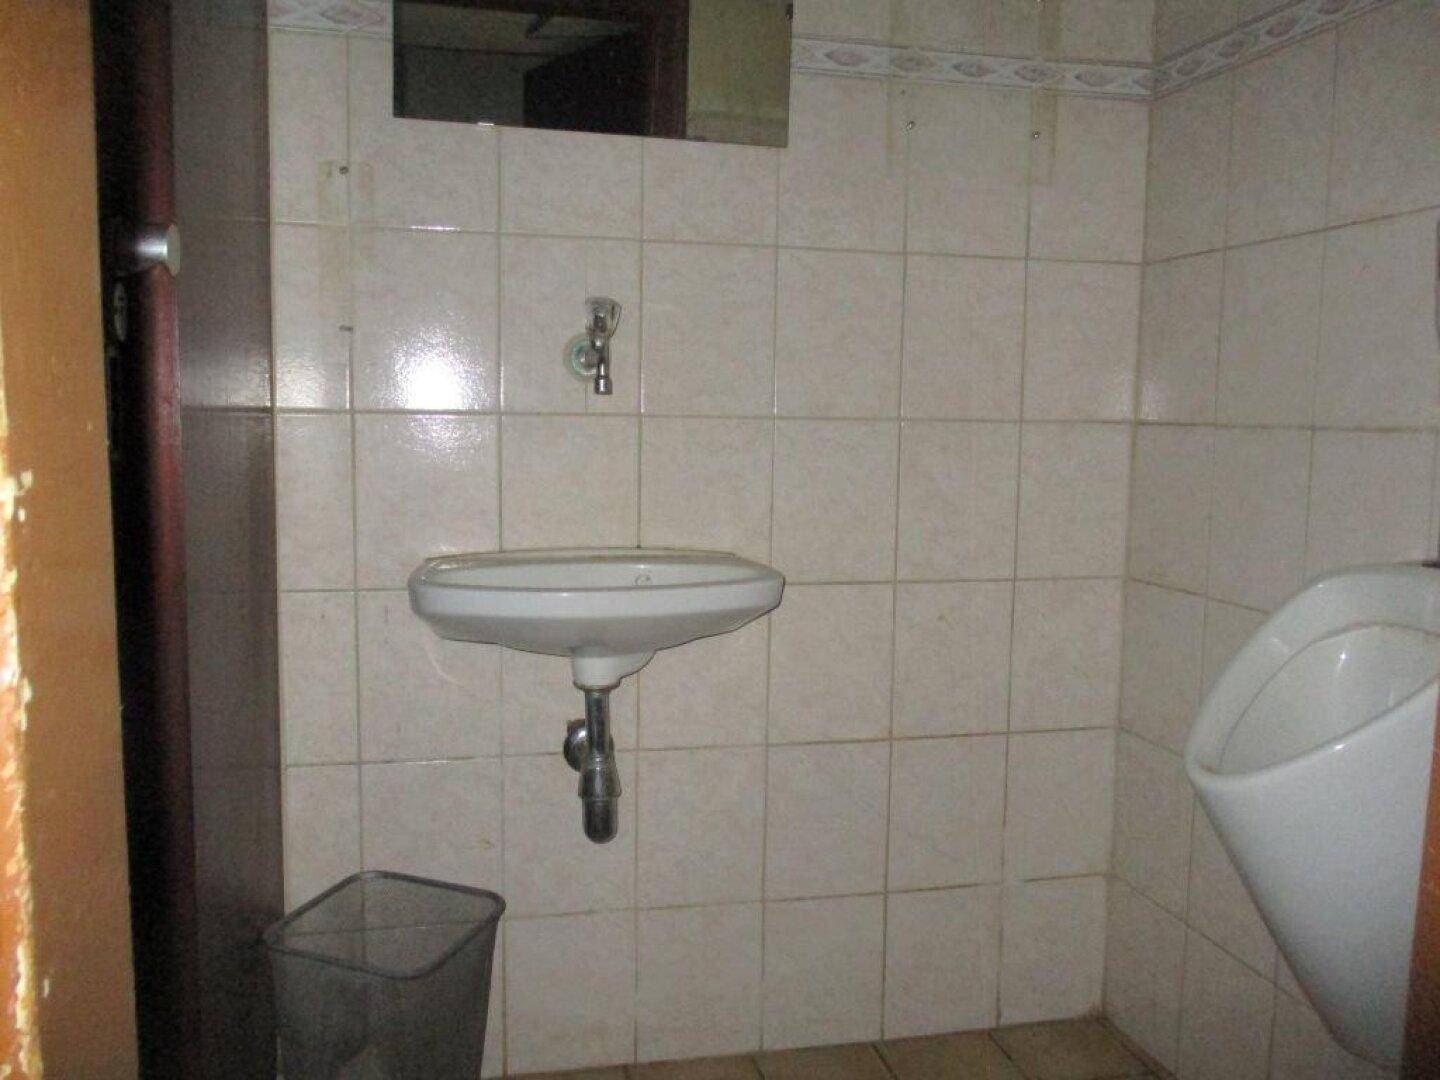 Toilette_Herren